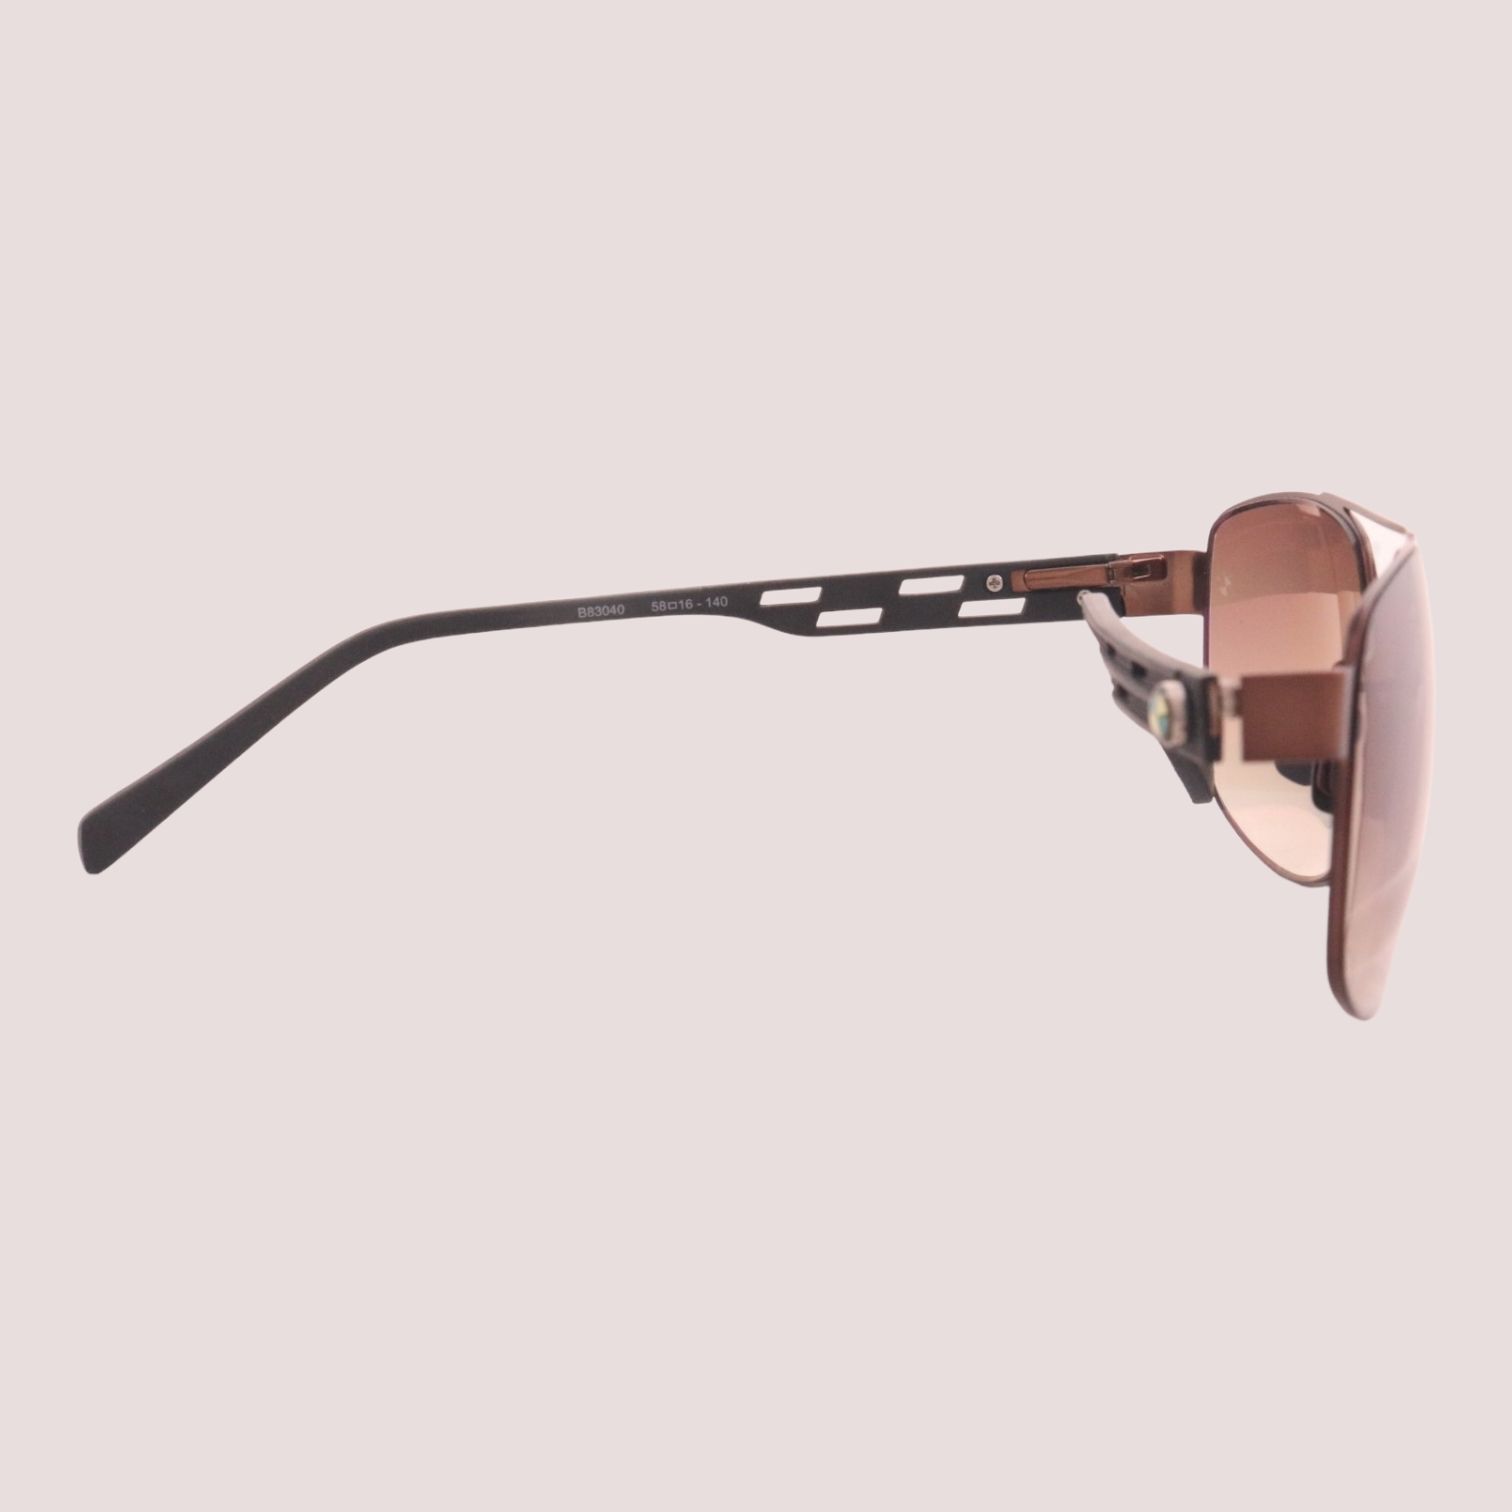 عینک آفتابی بی ام دبلیو مدل B83040 Limited Lux Edition -  - 3